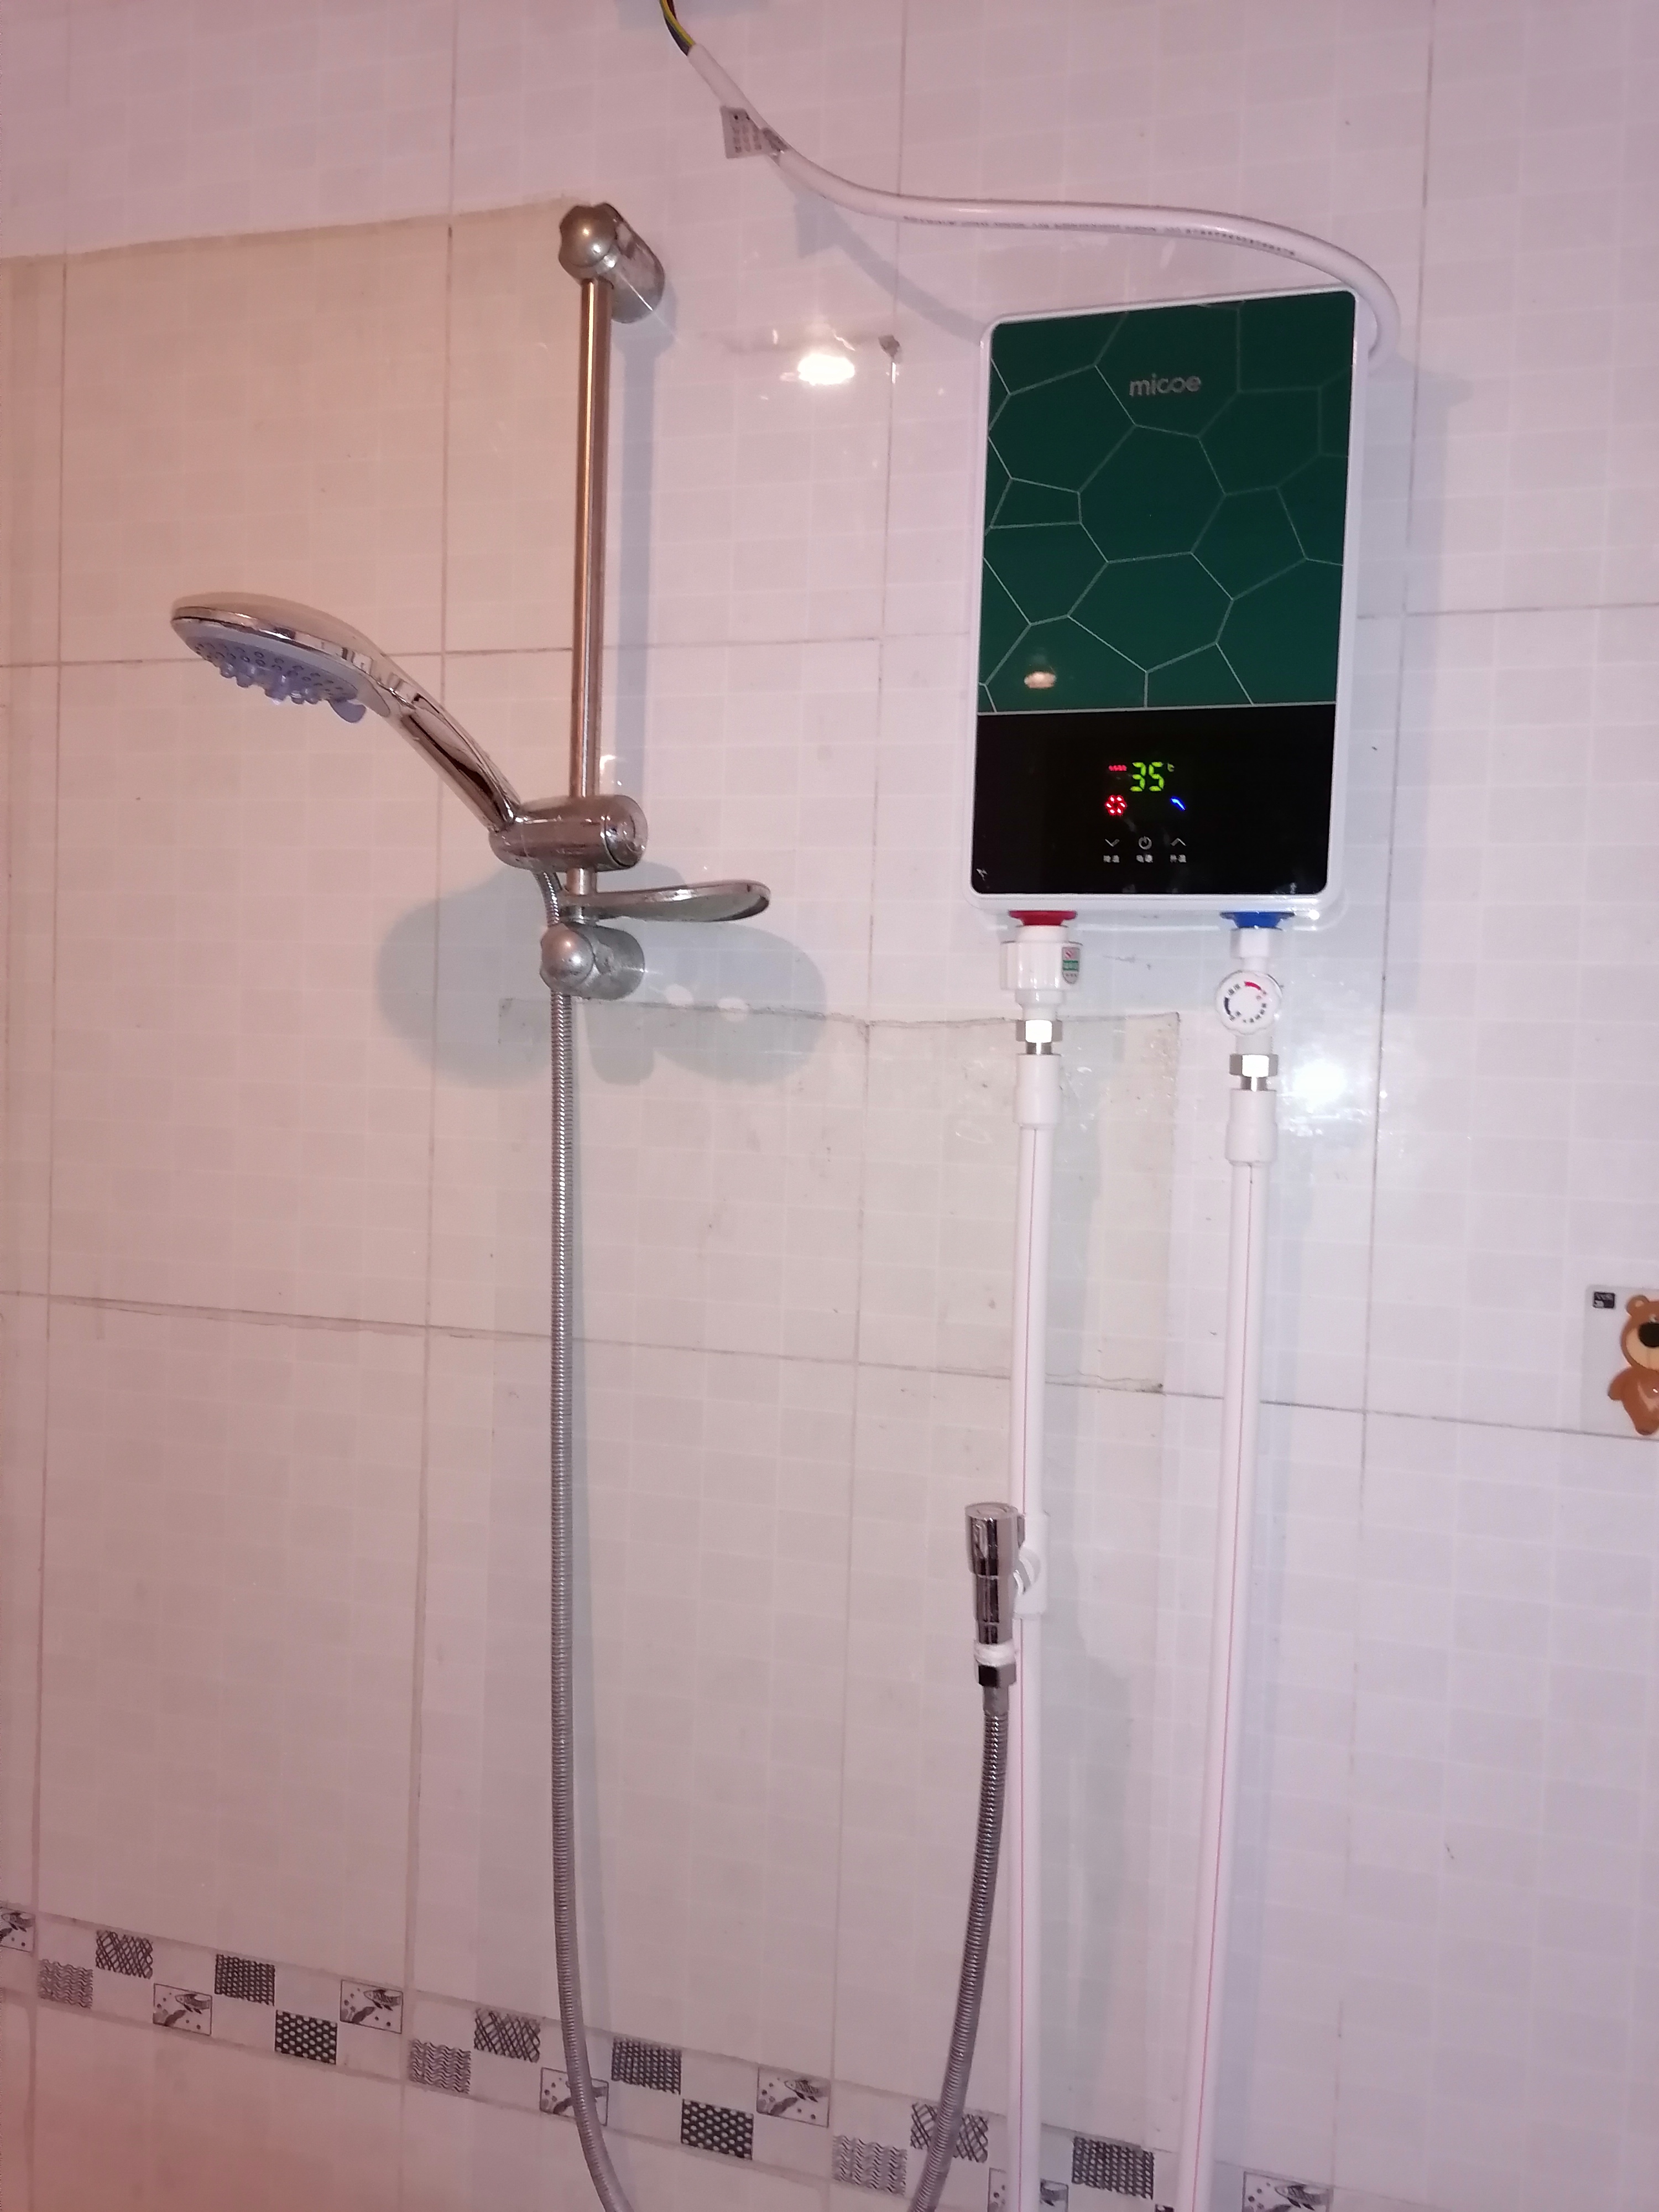 四季沐歌(micoe)dsk-h60-m02 即热式电热水器 家用免储水淋浴器 沐浴